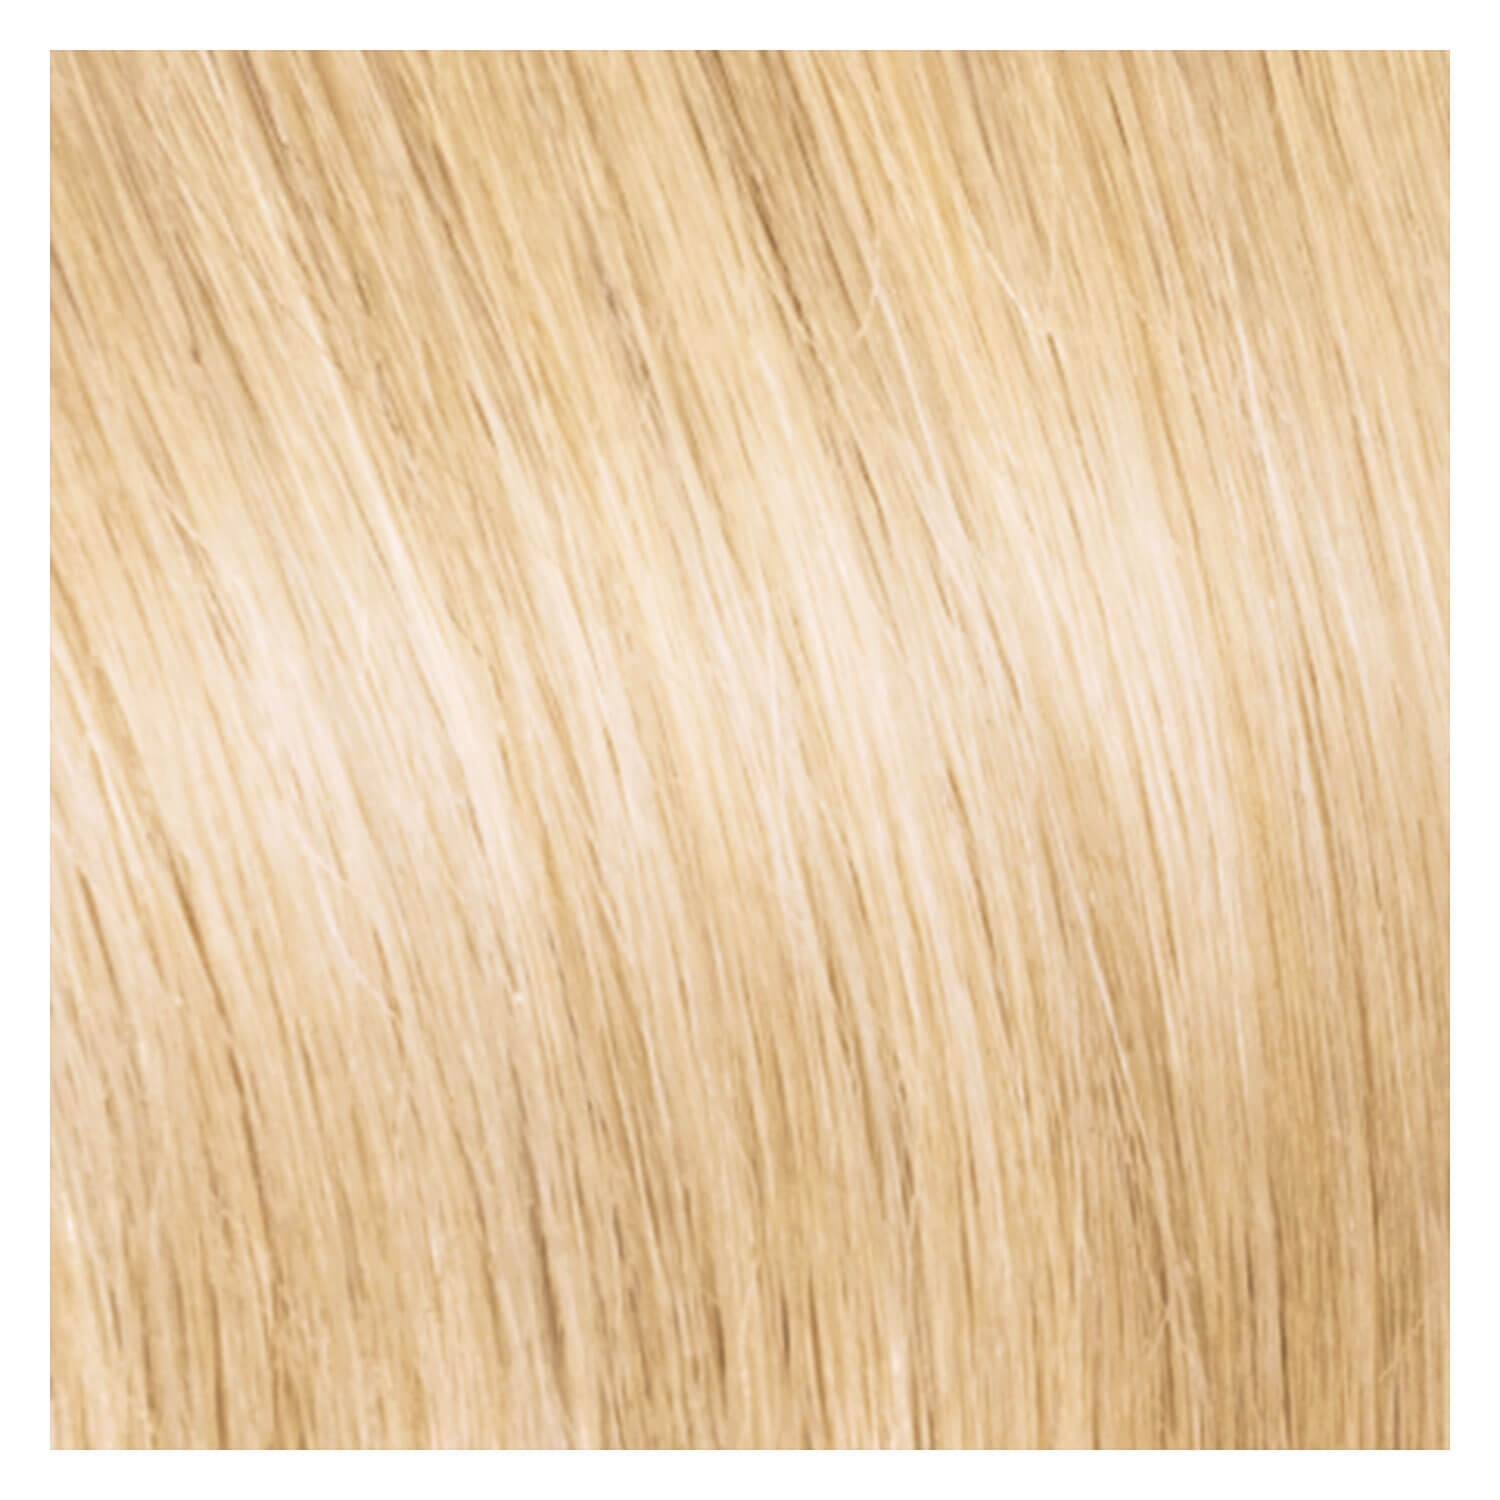 Produktbild von SHE Clip In-System Hair Extensions - 20 Platinblond 50/55cm